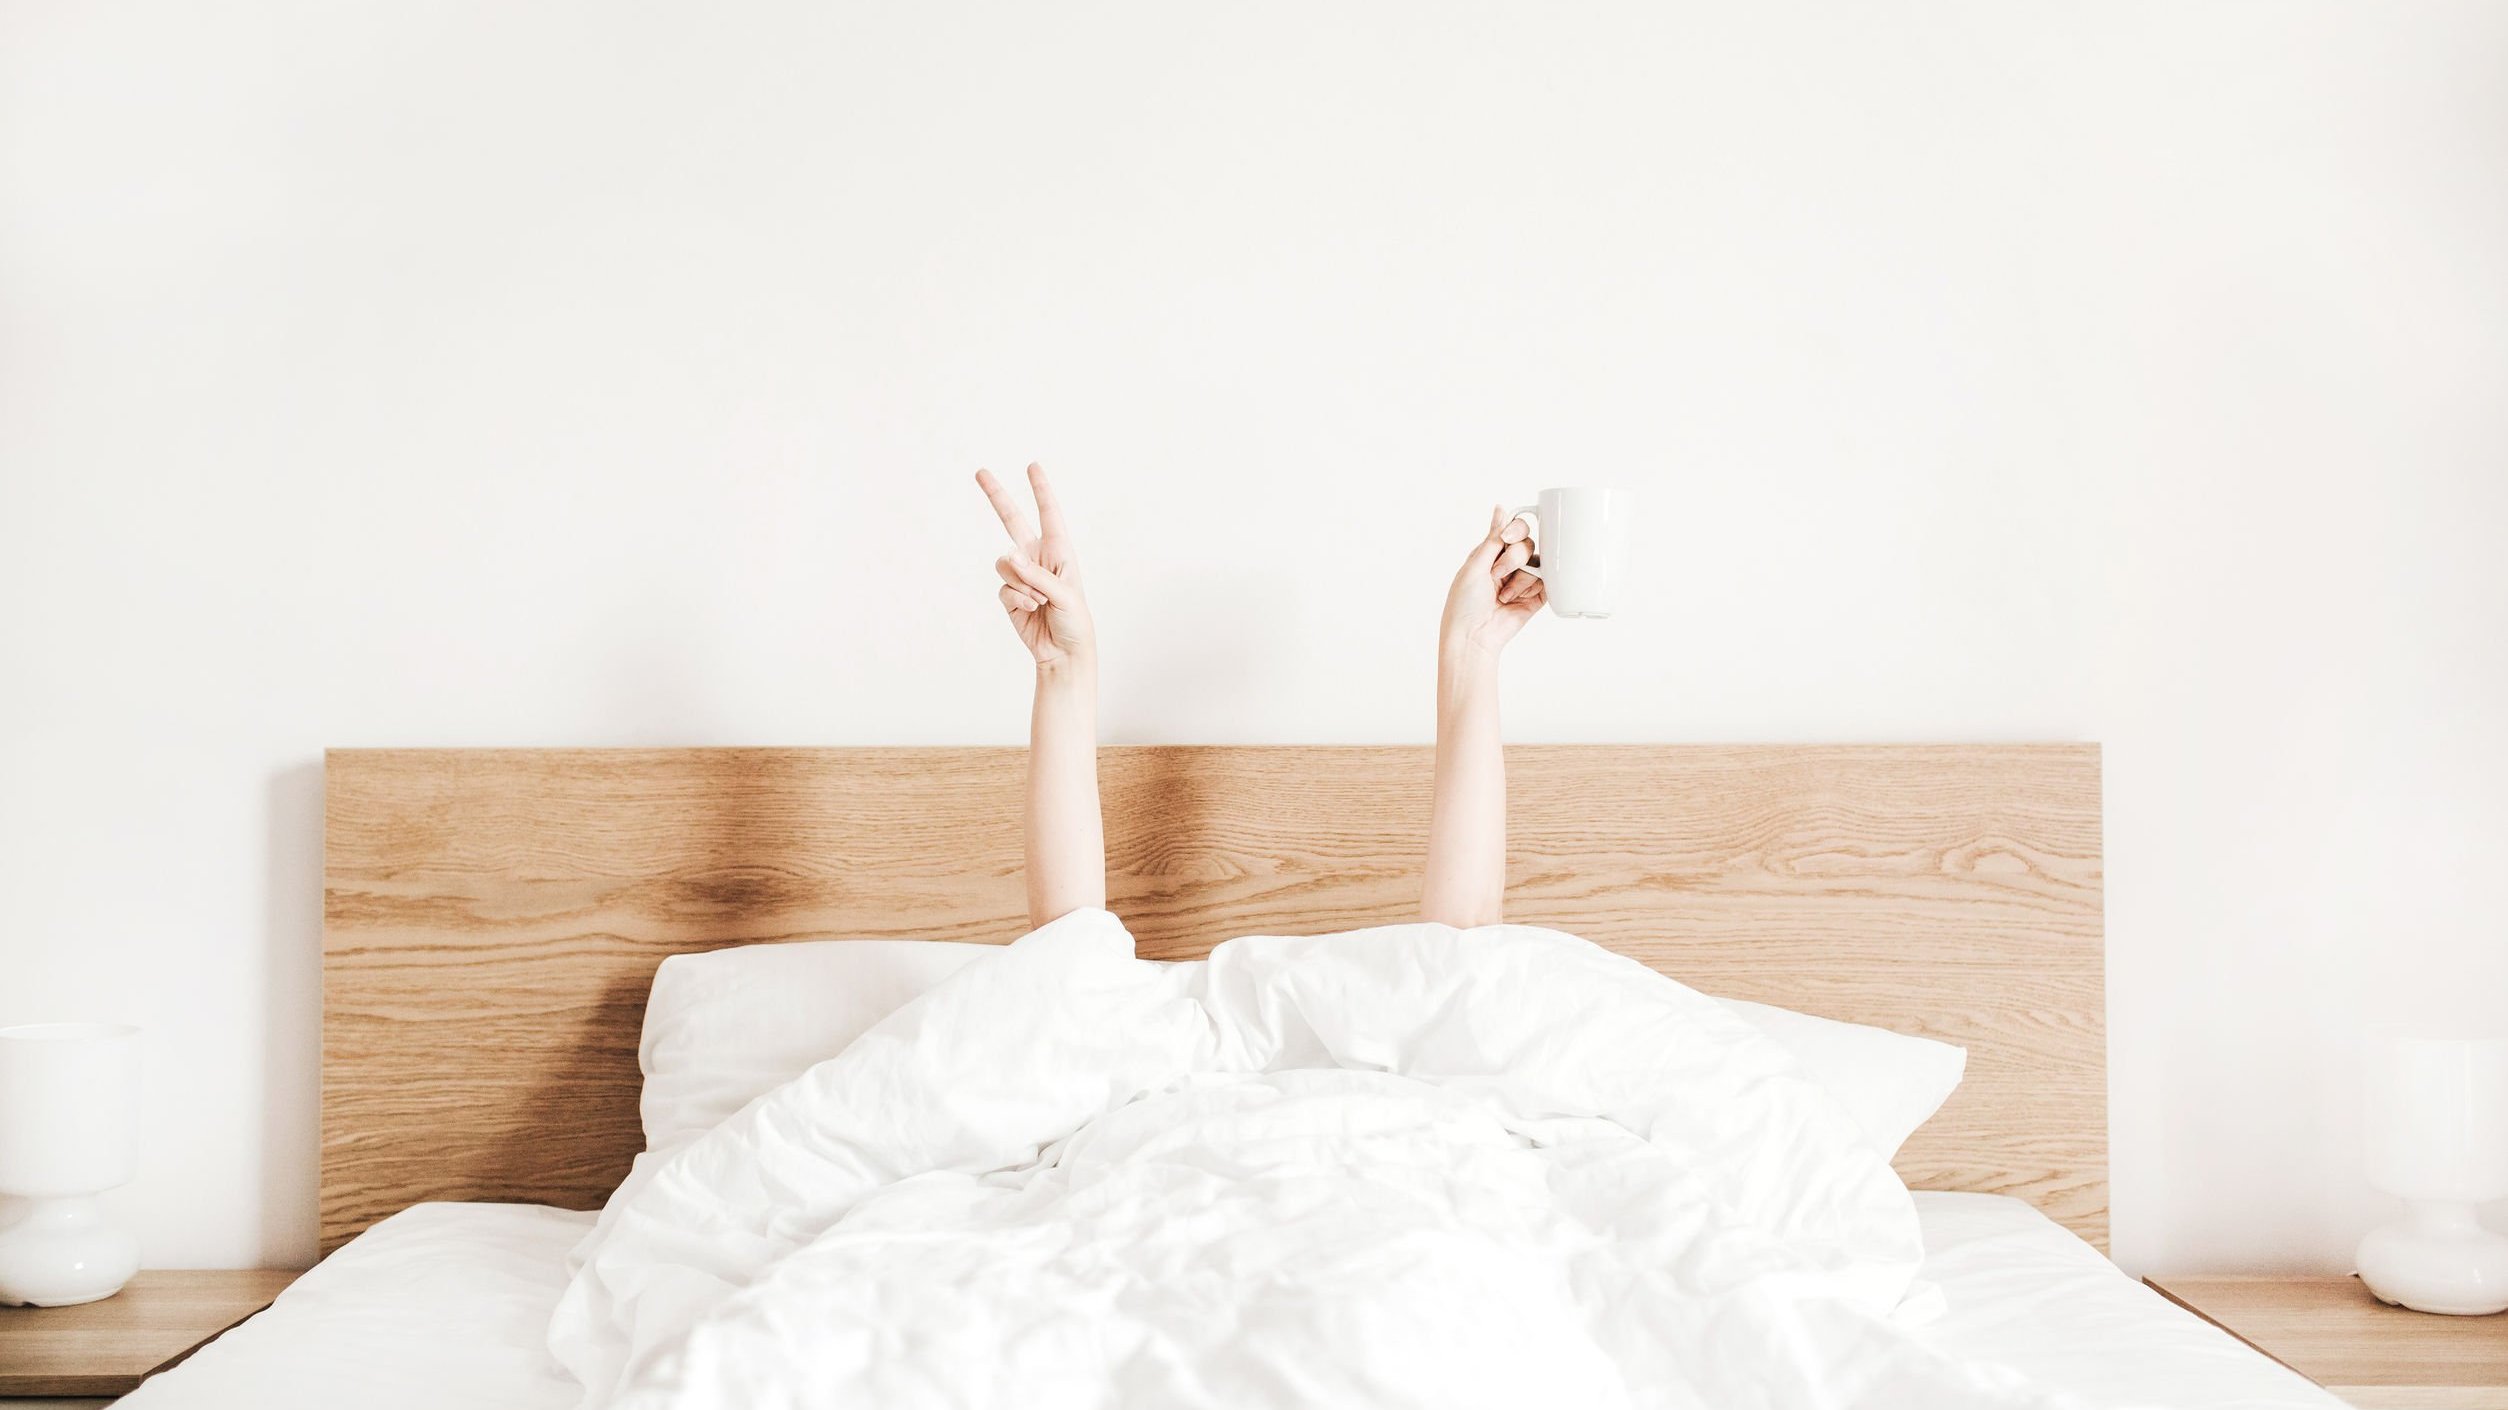 Pessoa deitada na cama apenas com as mãos levantadas: uma fazendo o sinal da paz e a outra segurando uma xícara de café.